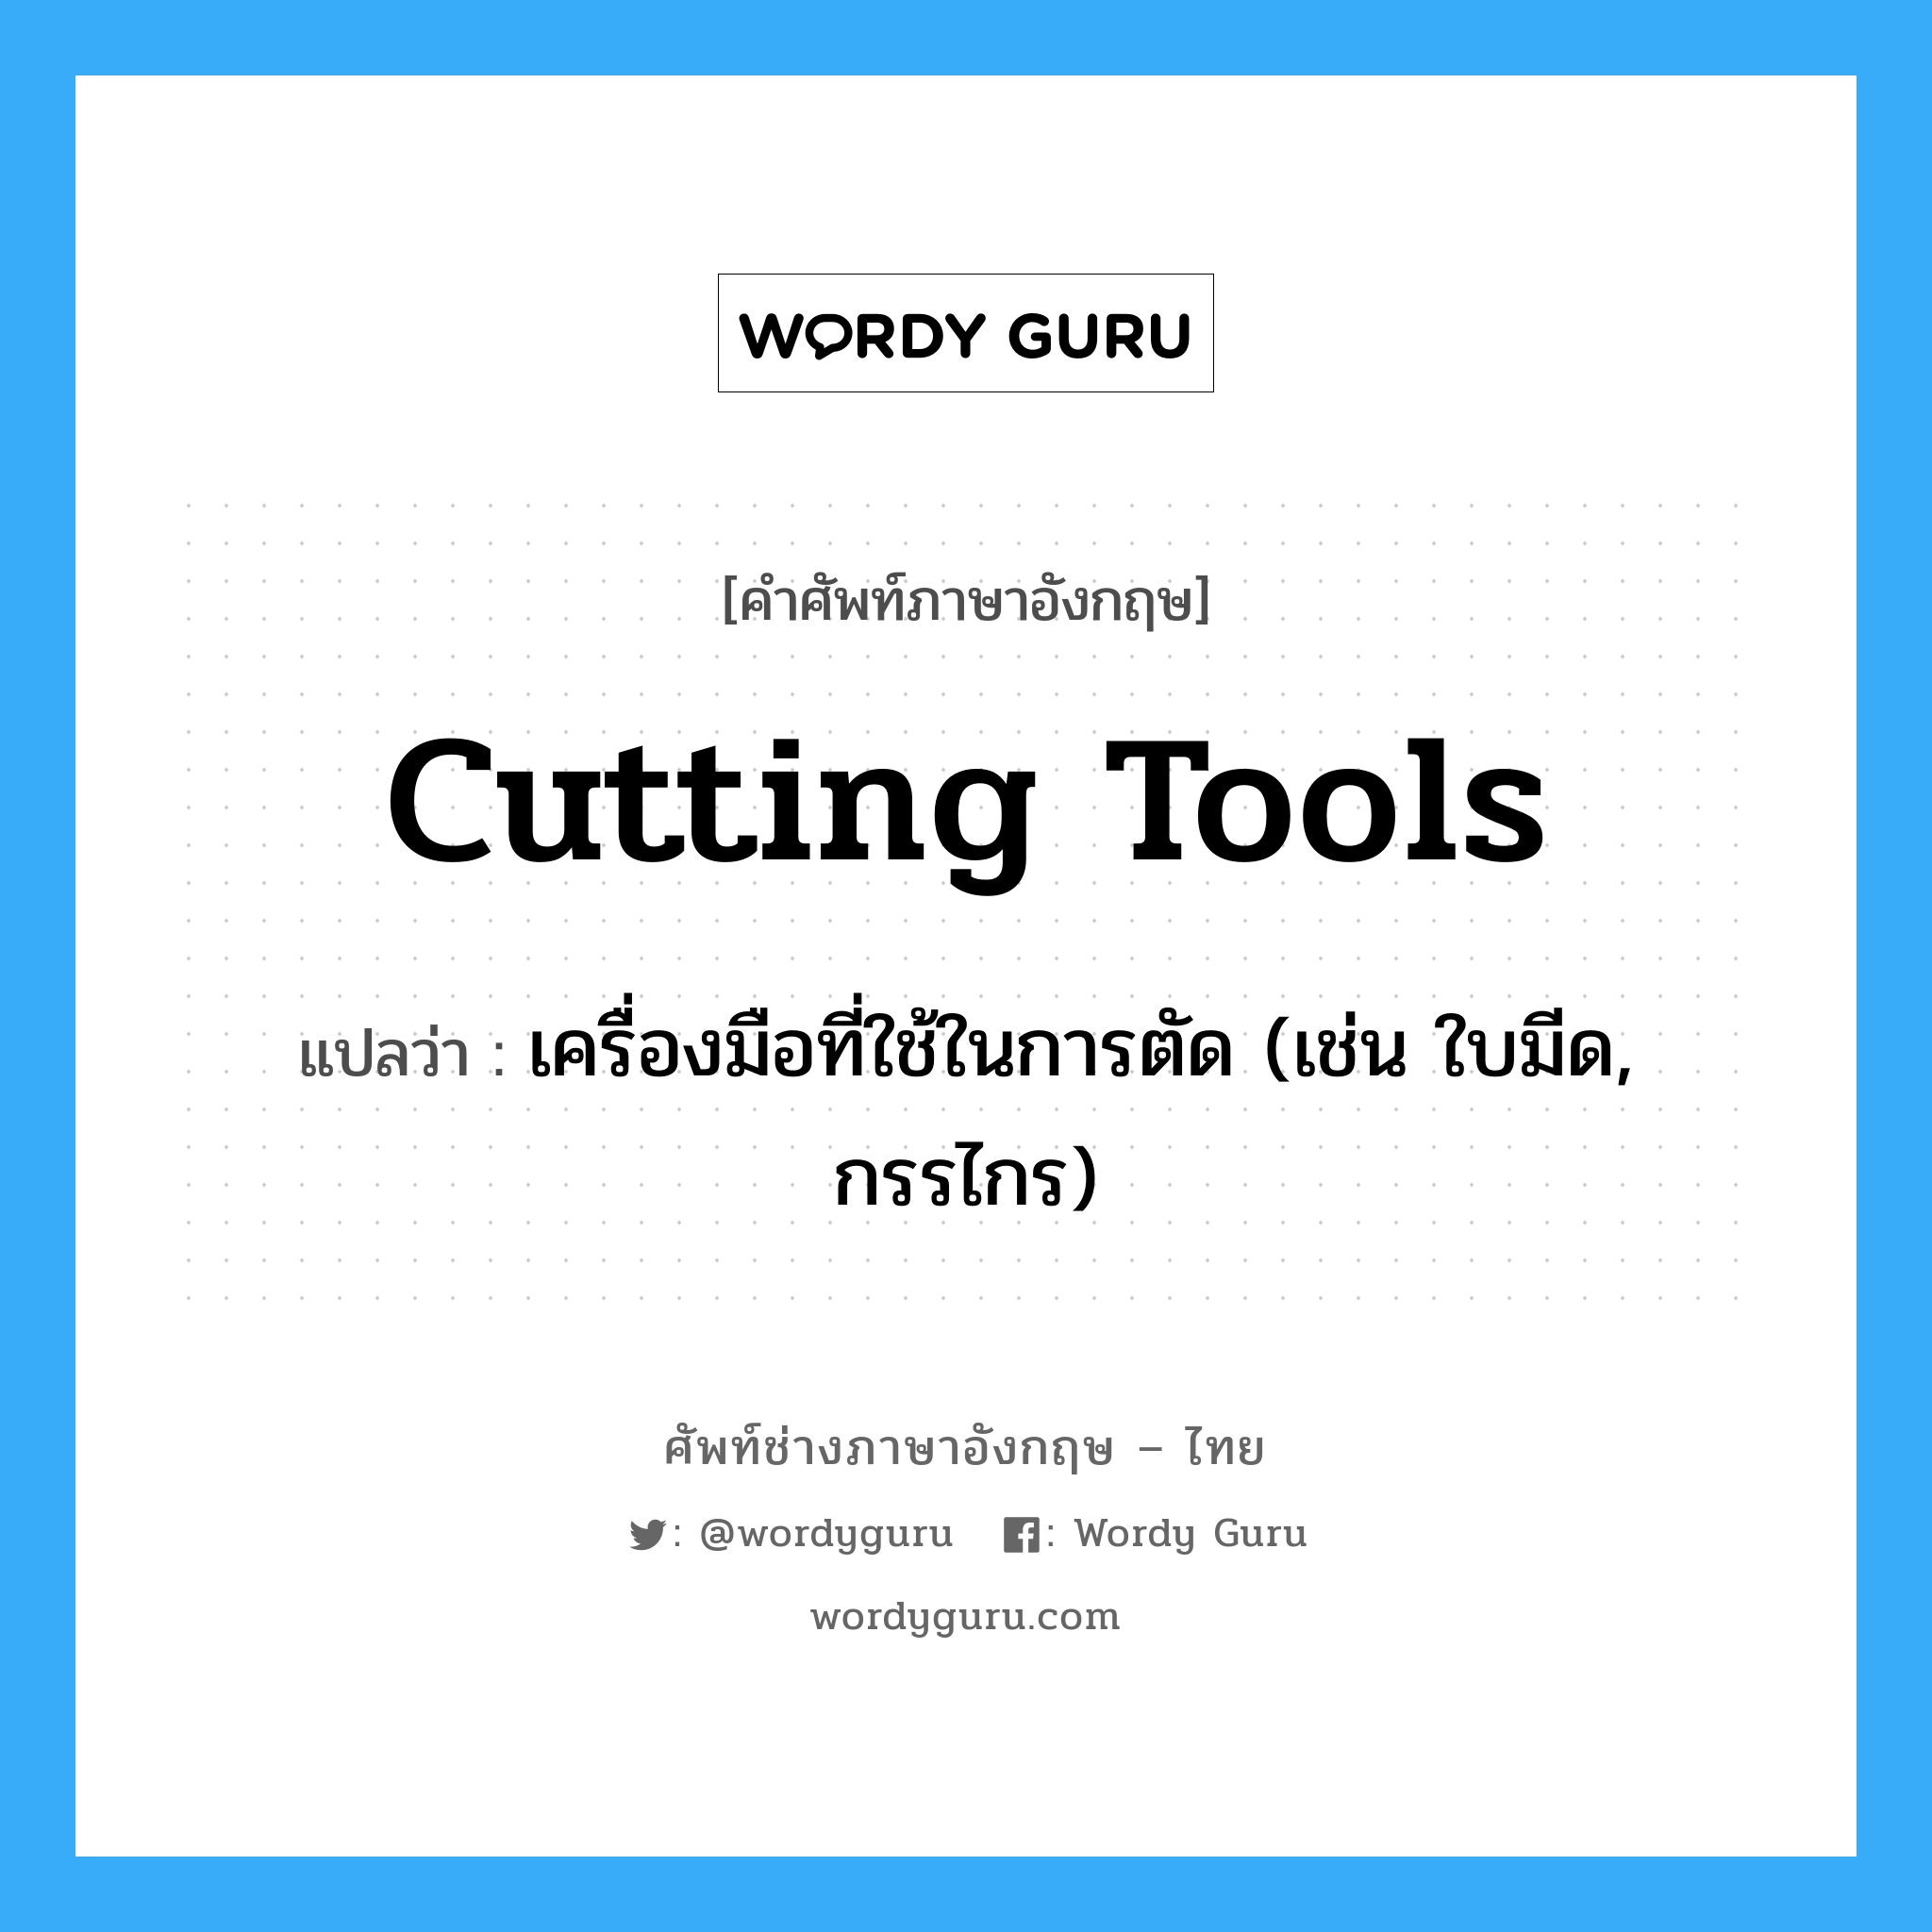 เครื่องมือที่ใช้ในการตัด (เช่น ใบมีด, กรรไกร) ภาษาอังกฤษ?, คำศัพท์ช่างภาษาอังกฤษ - ไทย เครื่องมือที่ใช้ในการตัด (เช่น ใบมีด, กรรไกร) คำศัพท์ภาษาอังกฤษ เครื่องมือที่ใช้ในการตัด (เช่น ใบมีด, กรรไกร) แปลว่า cutting tools